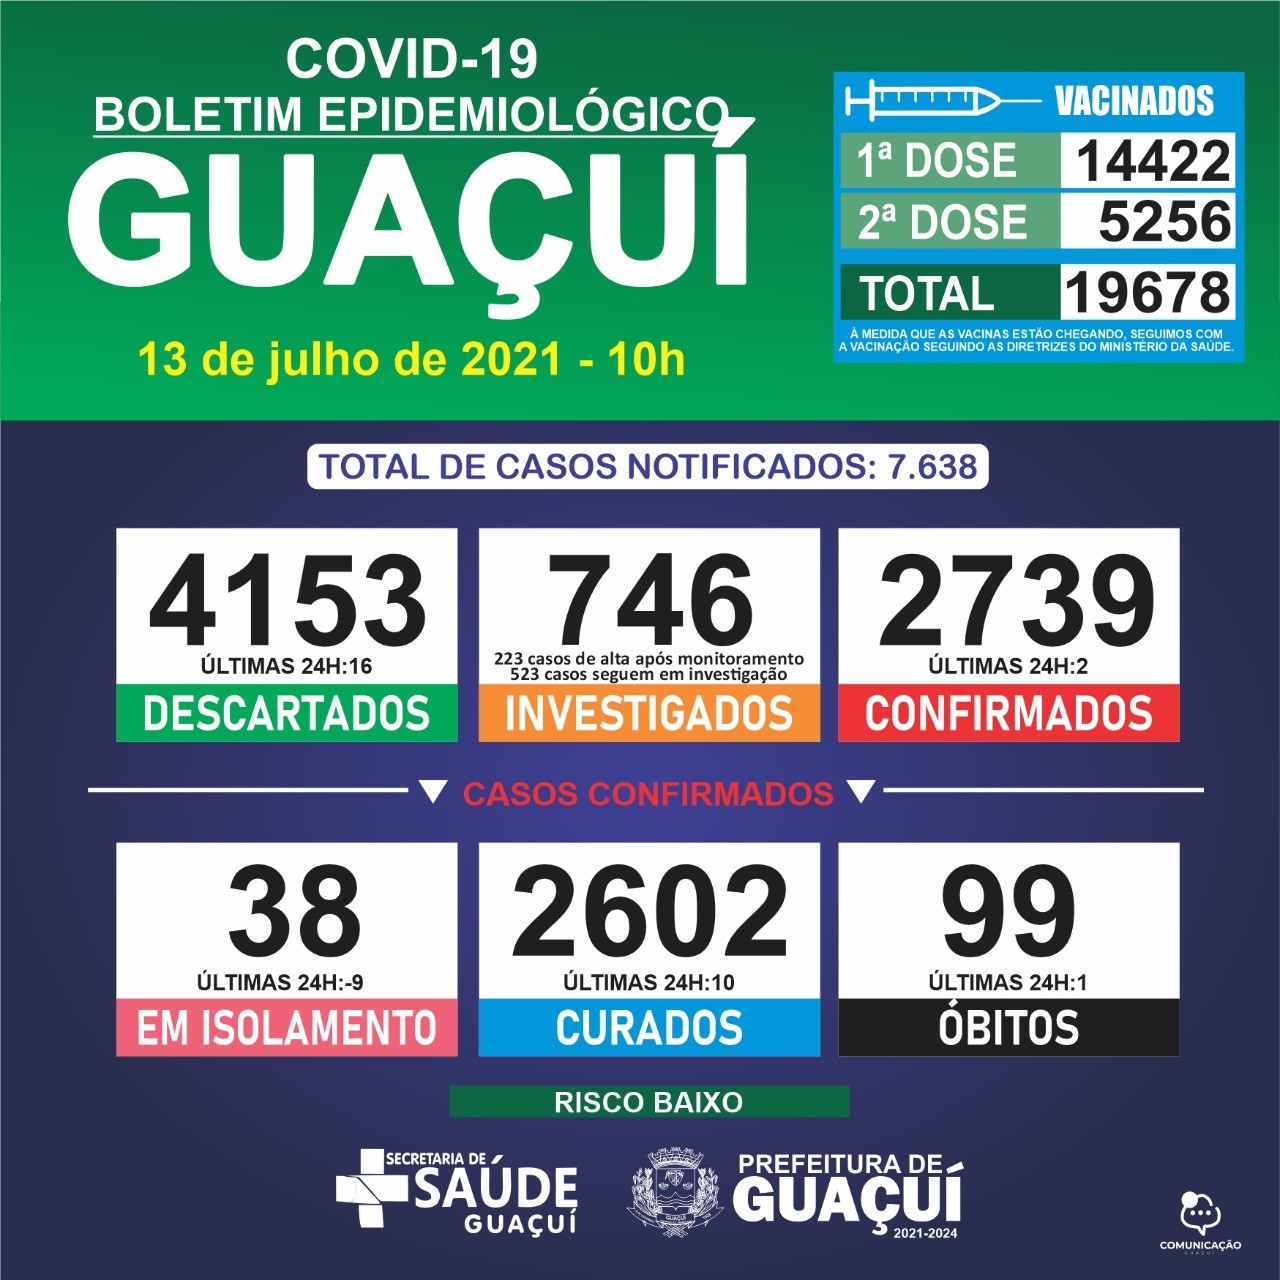 Boletim Epidemiológico 13/07/21: Guaçuí registra 1 óbito, 2 casos confirmados e 10 curados nas últimas 24 horas